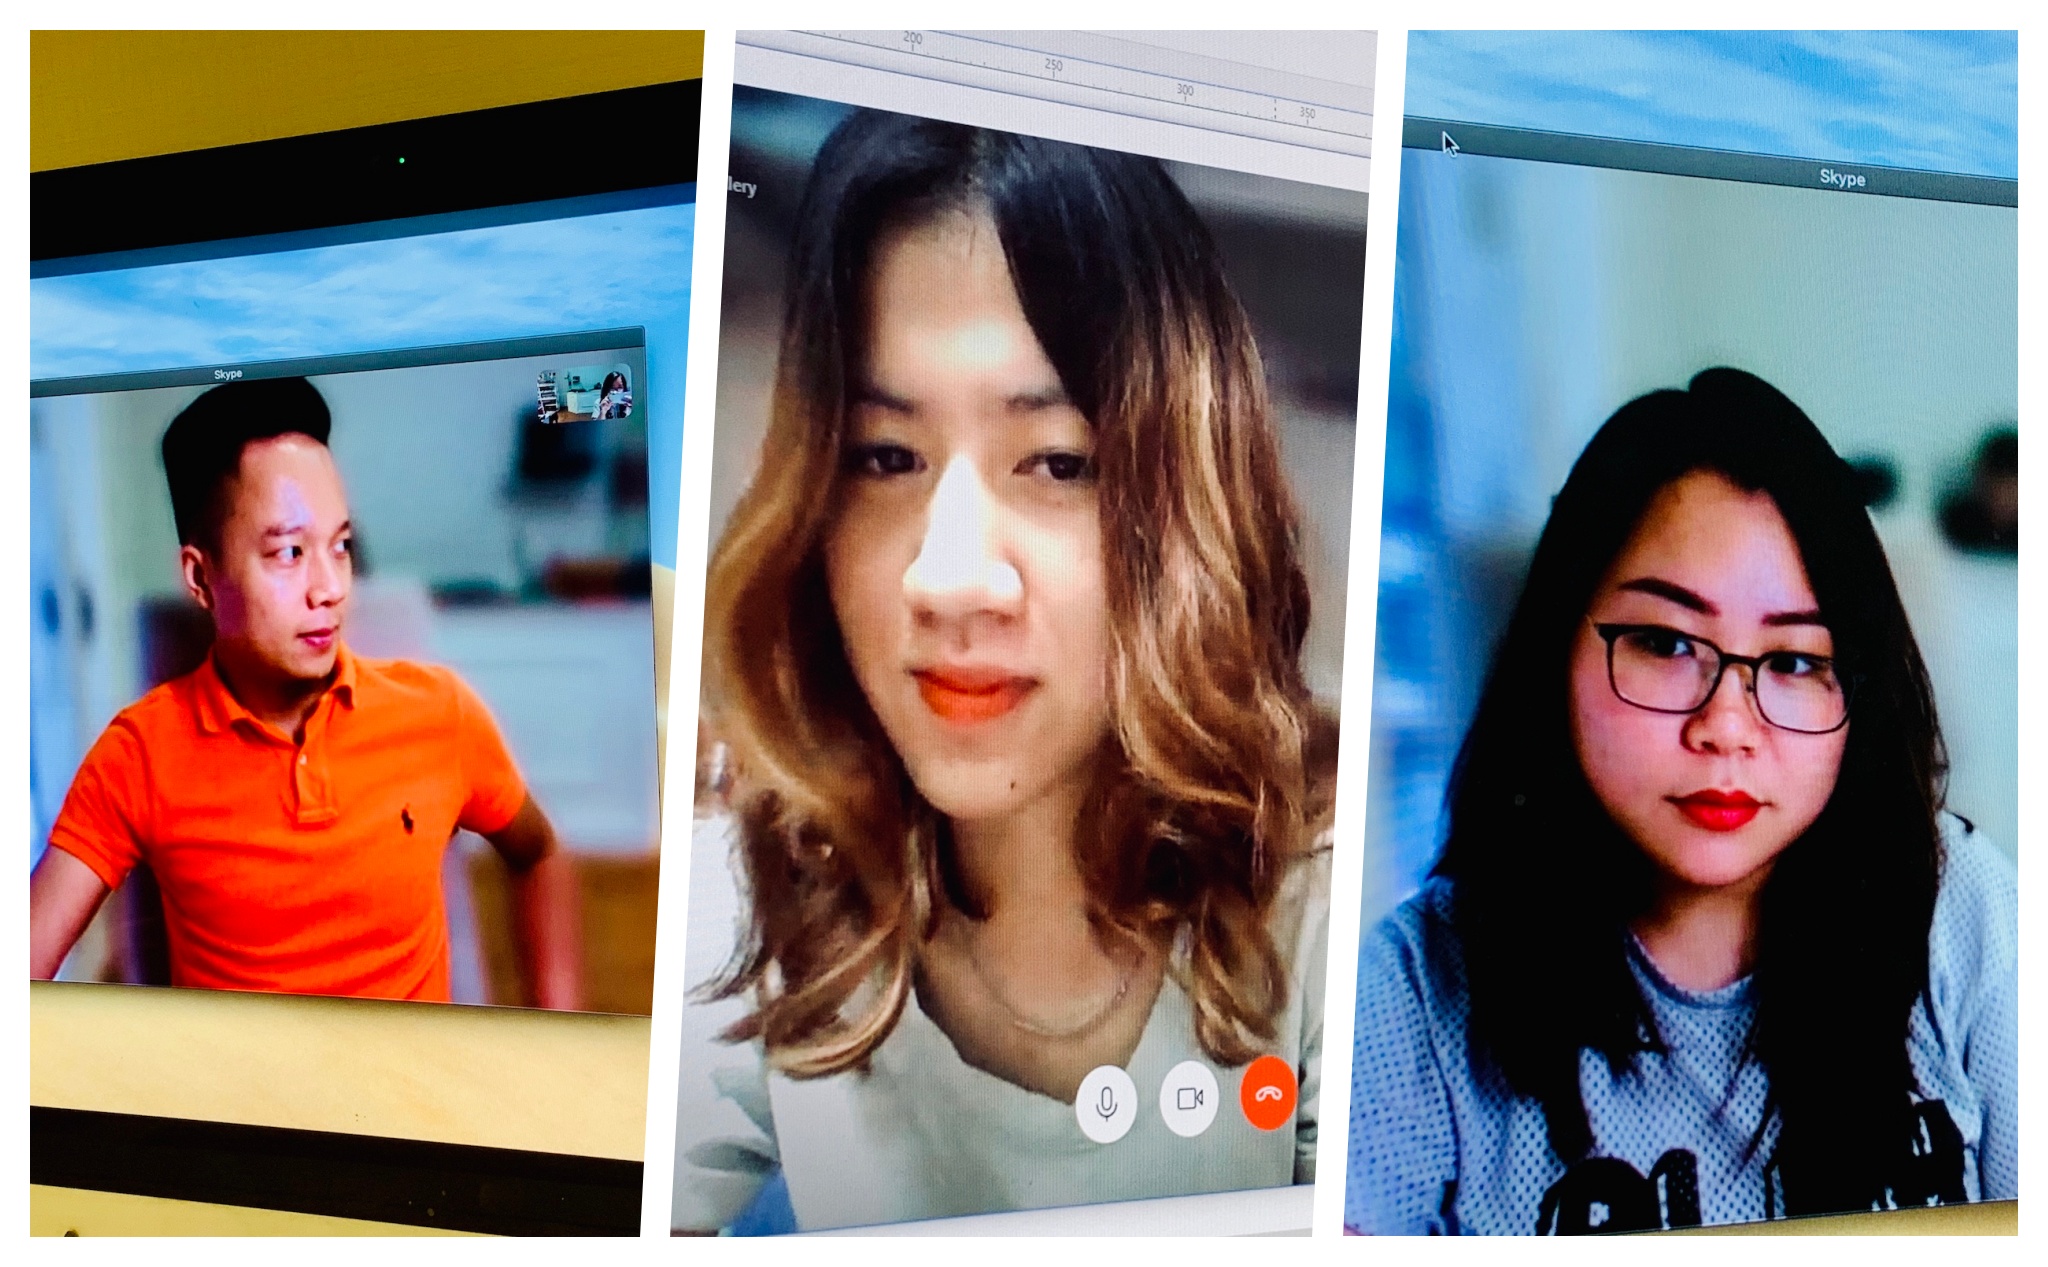 Video xóa phông Skype là một công cụ tuyệt vời để tạo ra những video chuyên nghiệp, không giới hạn bởi không gian. Bạn có thể tạo ra những thước phim một cách dễ dàng với các tính năng chỉnh sửa tiên tiến mà phần mềm Skype cung cấp. Video của bạn sẽ trở nên sắc nét hơn và thu hút hơn nhiều so với các video bình thường.